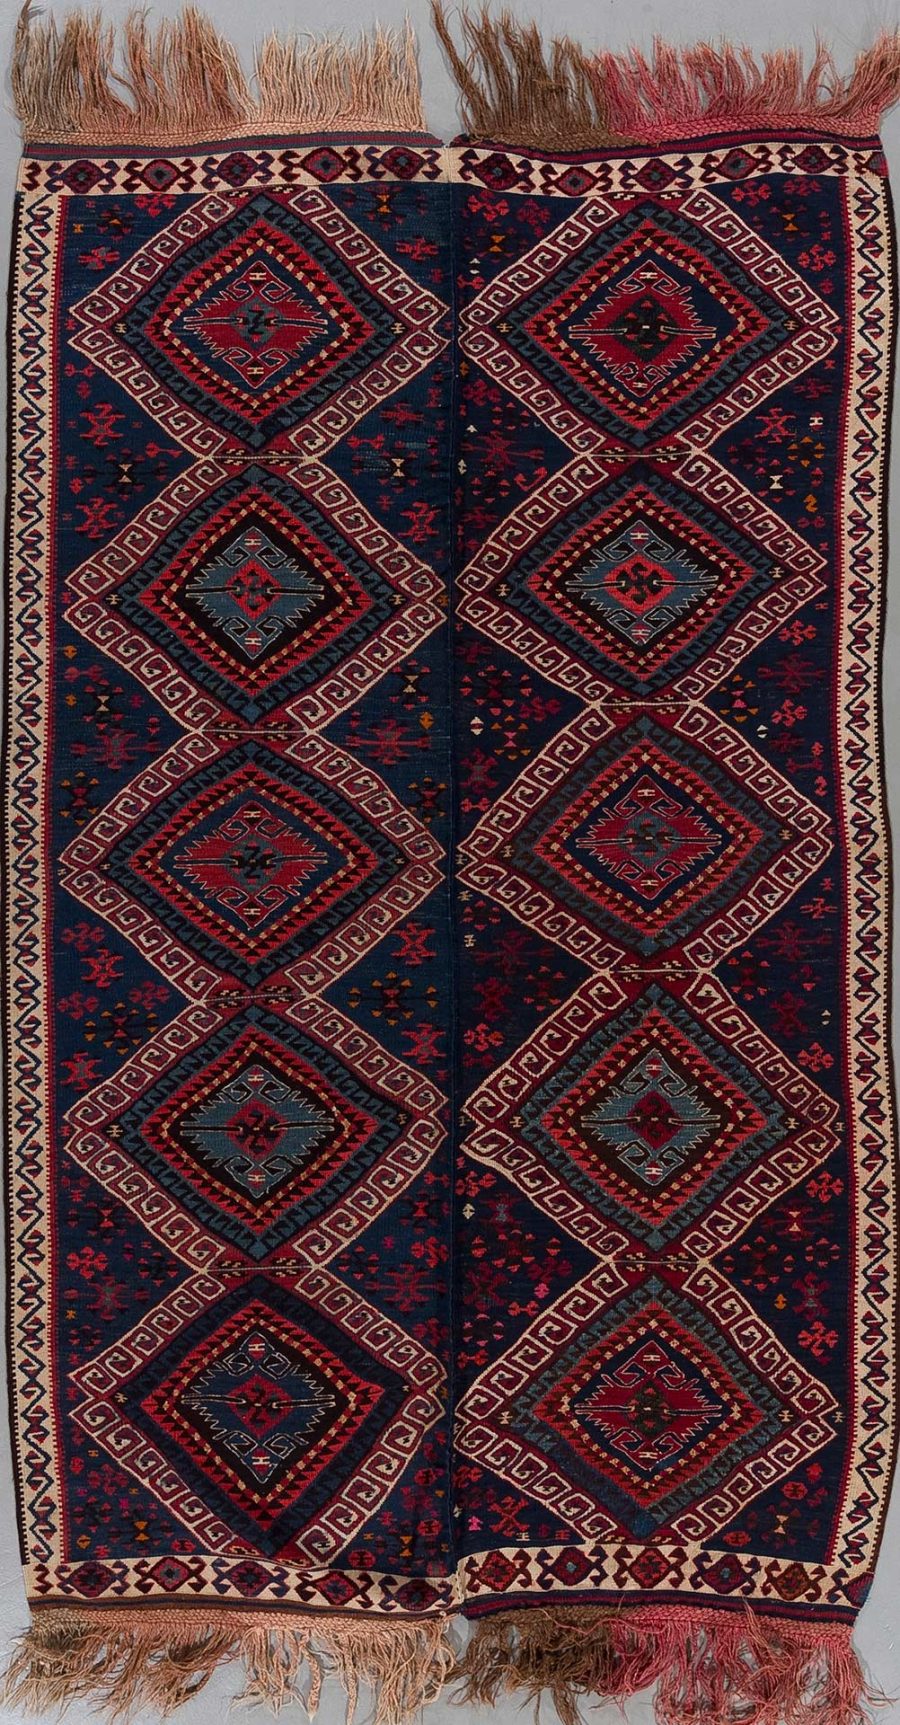 Handgeknüpfter, traditioneller Teppich in vertikaler Ausrichtung mit symmetrischem, geometrischem Muster in dunkelblauen, roten und beige Farbtönen, umgeben von Bordüren und mit Fransen an den Enden.